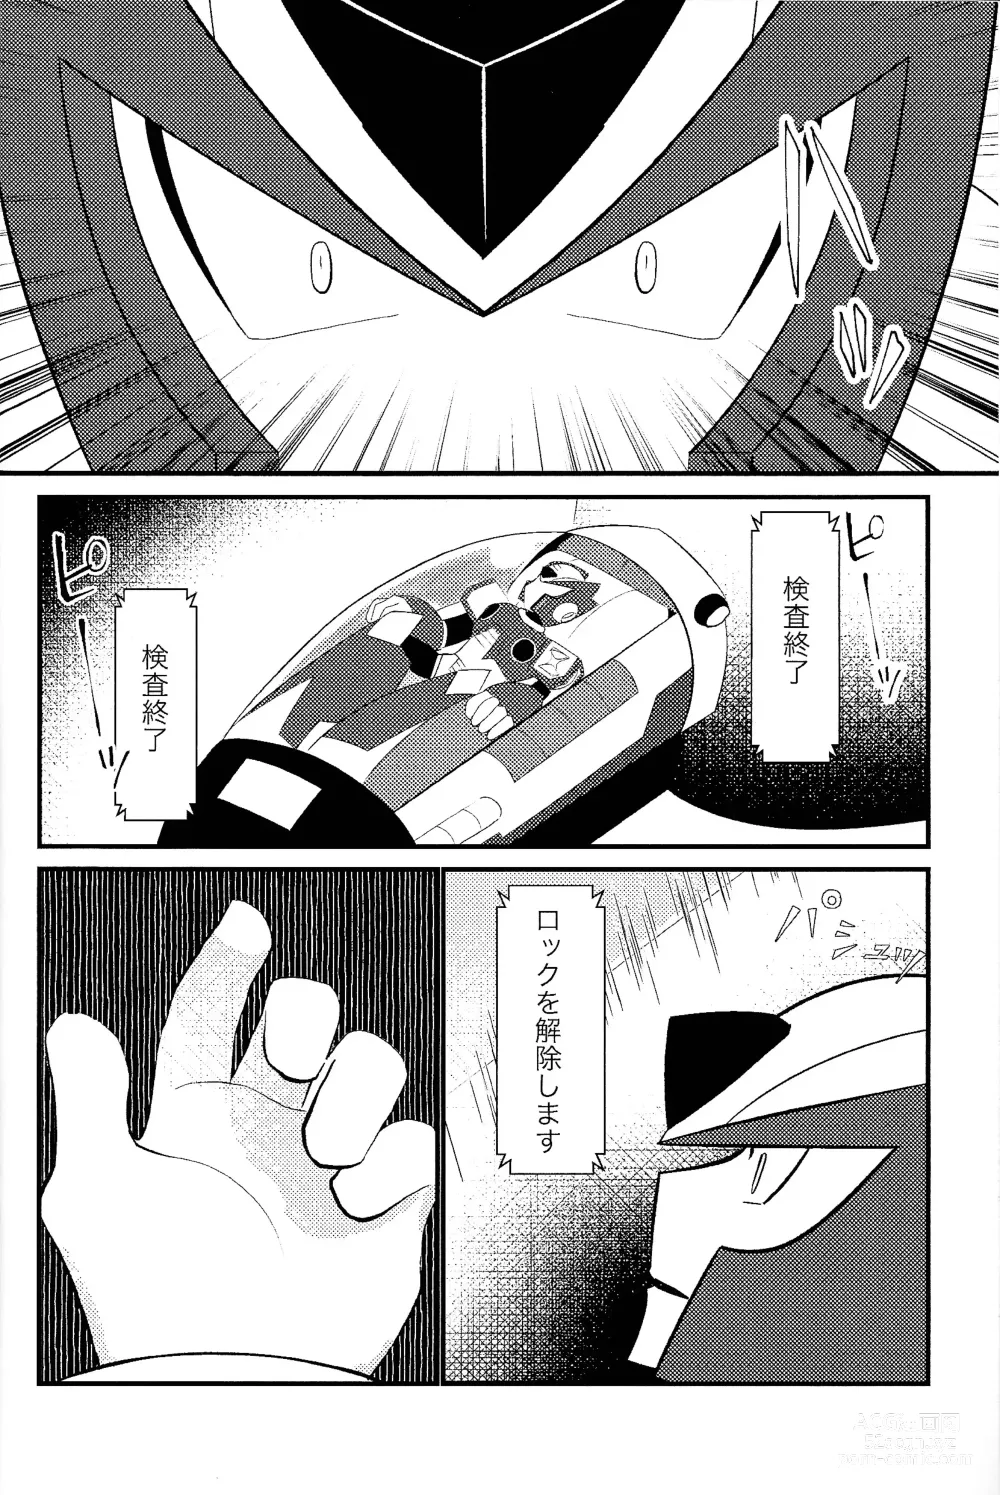 Page 4 of doujinshi Ore wa kimi no te de Hna koto o shite shimatta!!!